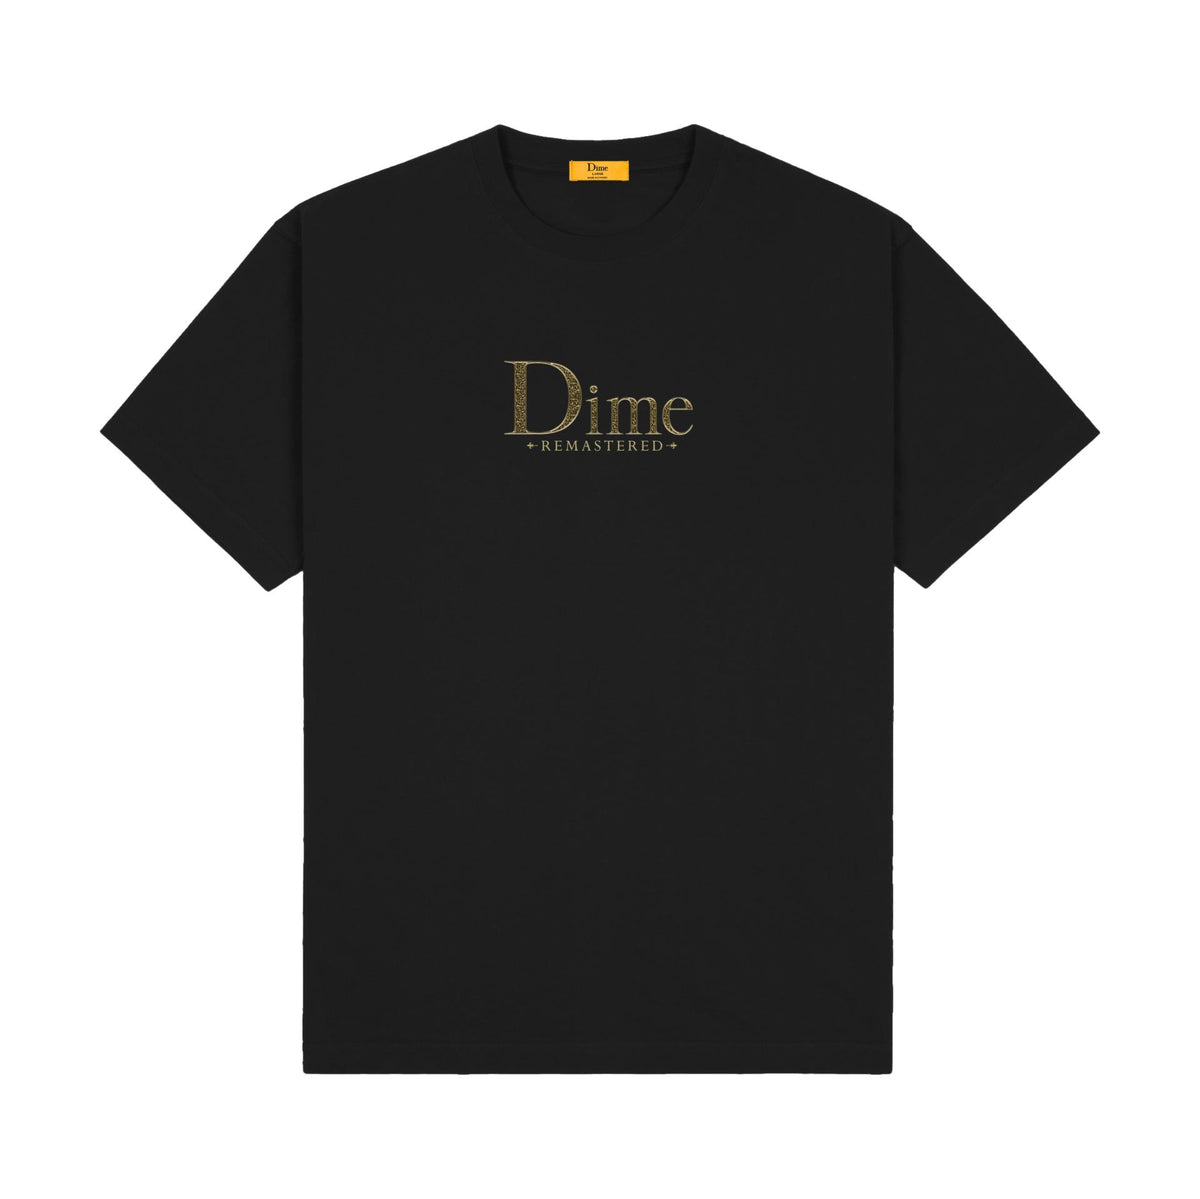 Dime Remastered T-Shirt Black - Venue Skateboards